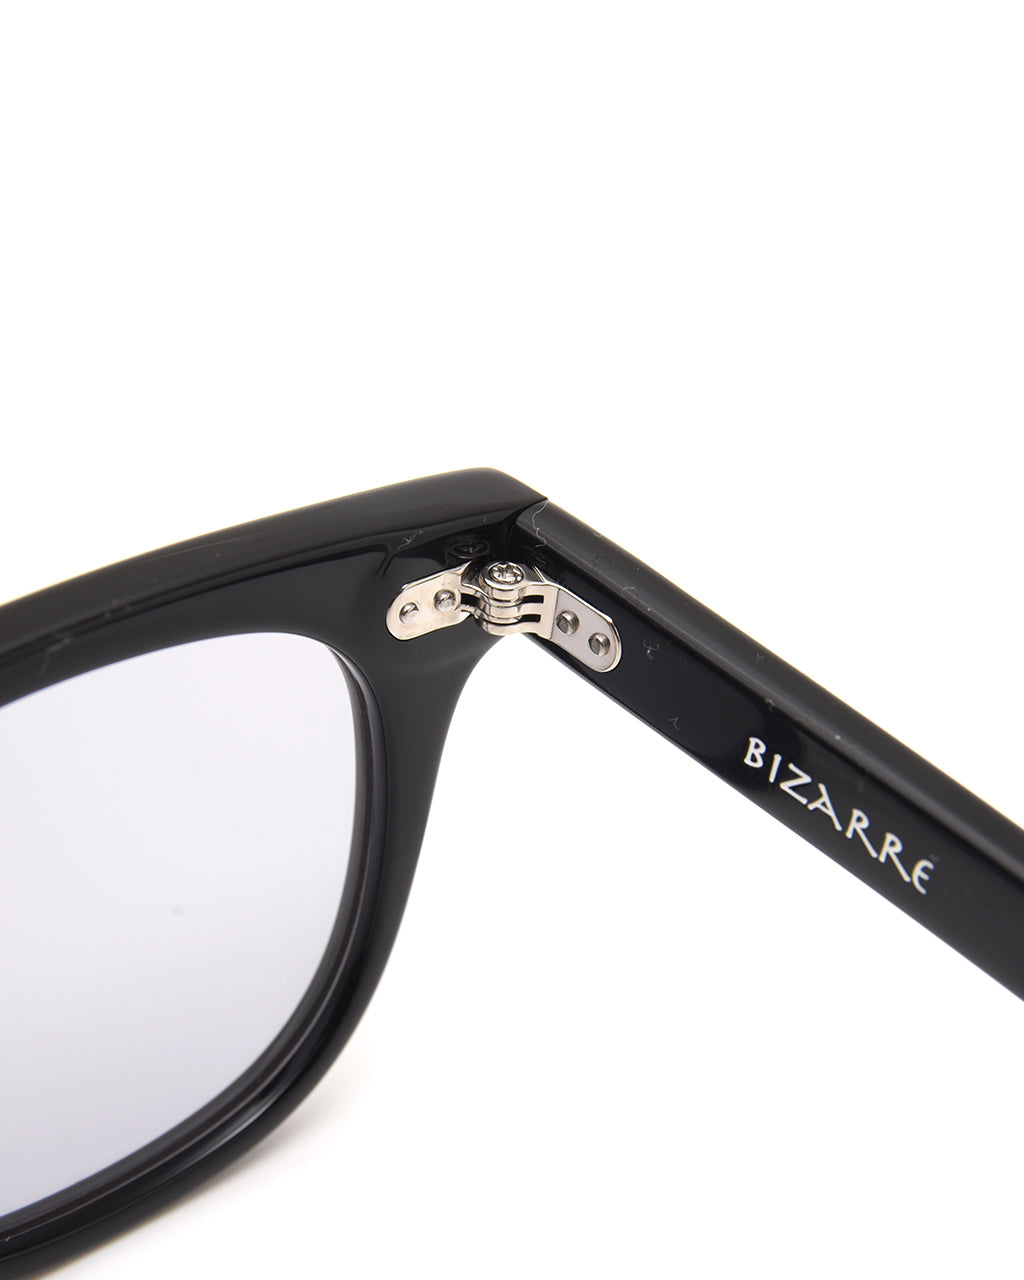 NEW. ニュー ビザール BIZARRE ウェリントン型 サングラス 眼鏡 めがね 伊達メガネ カラーレンズ  【送料無料】